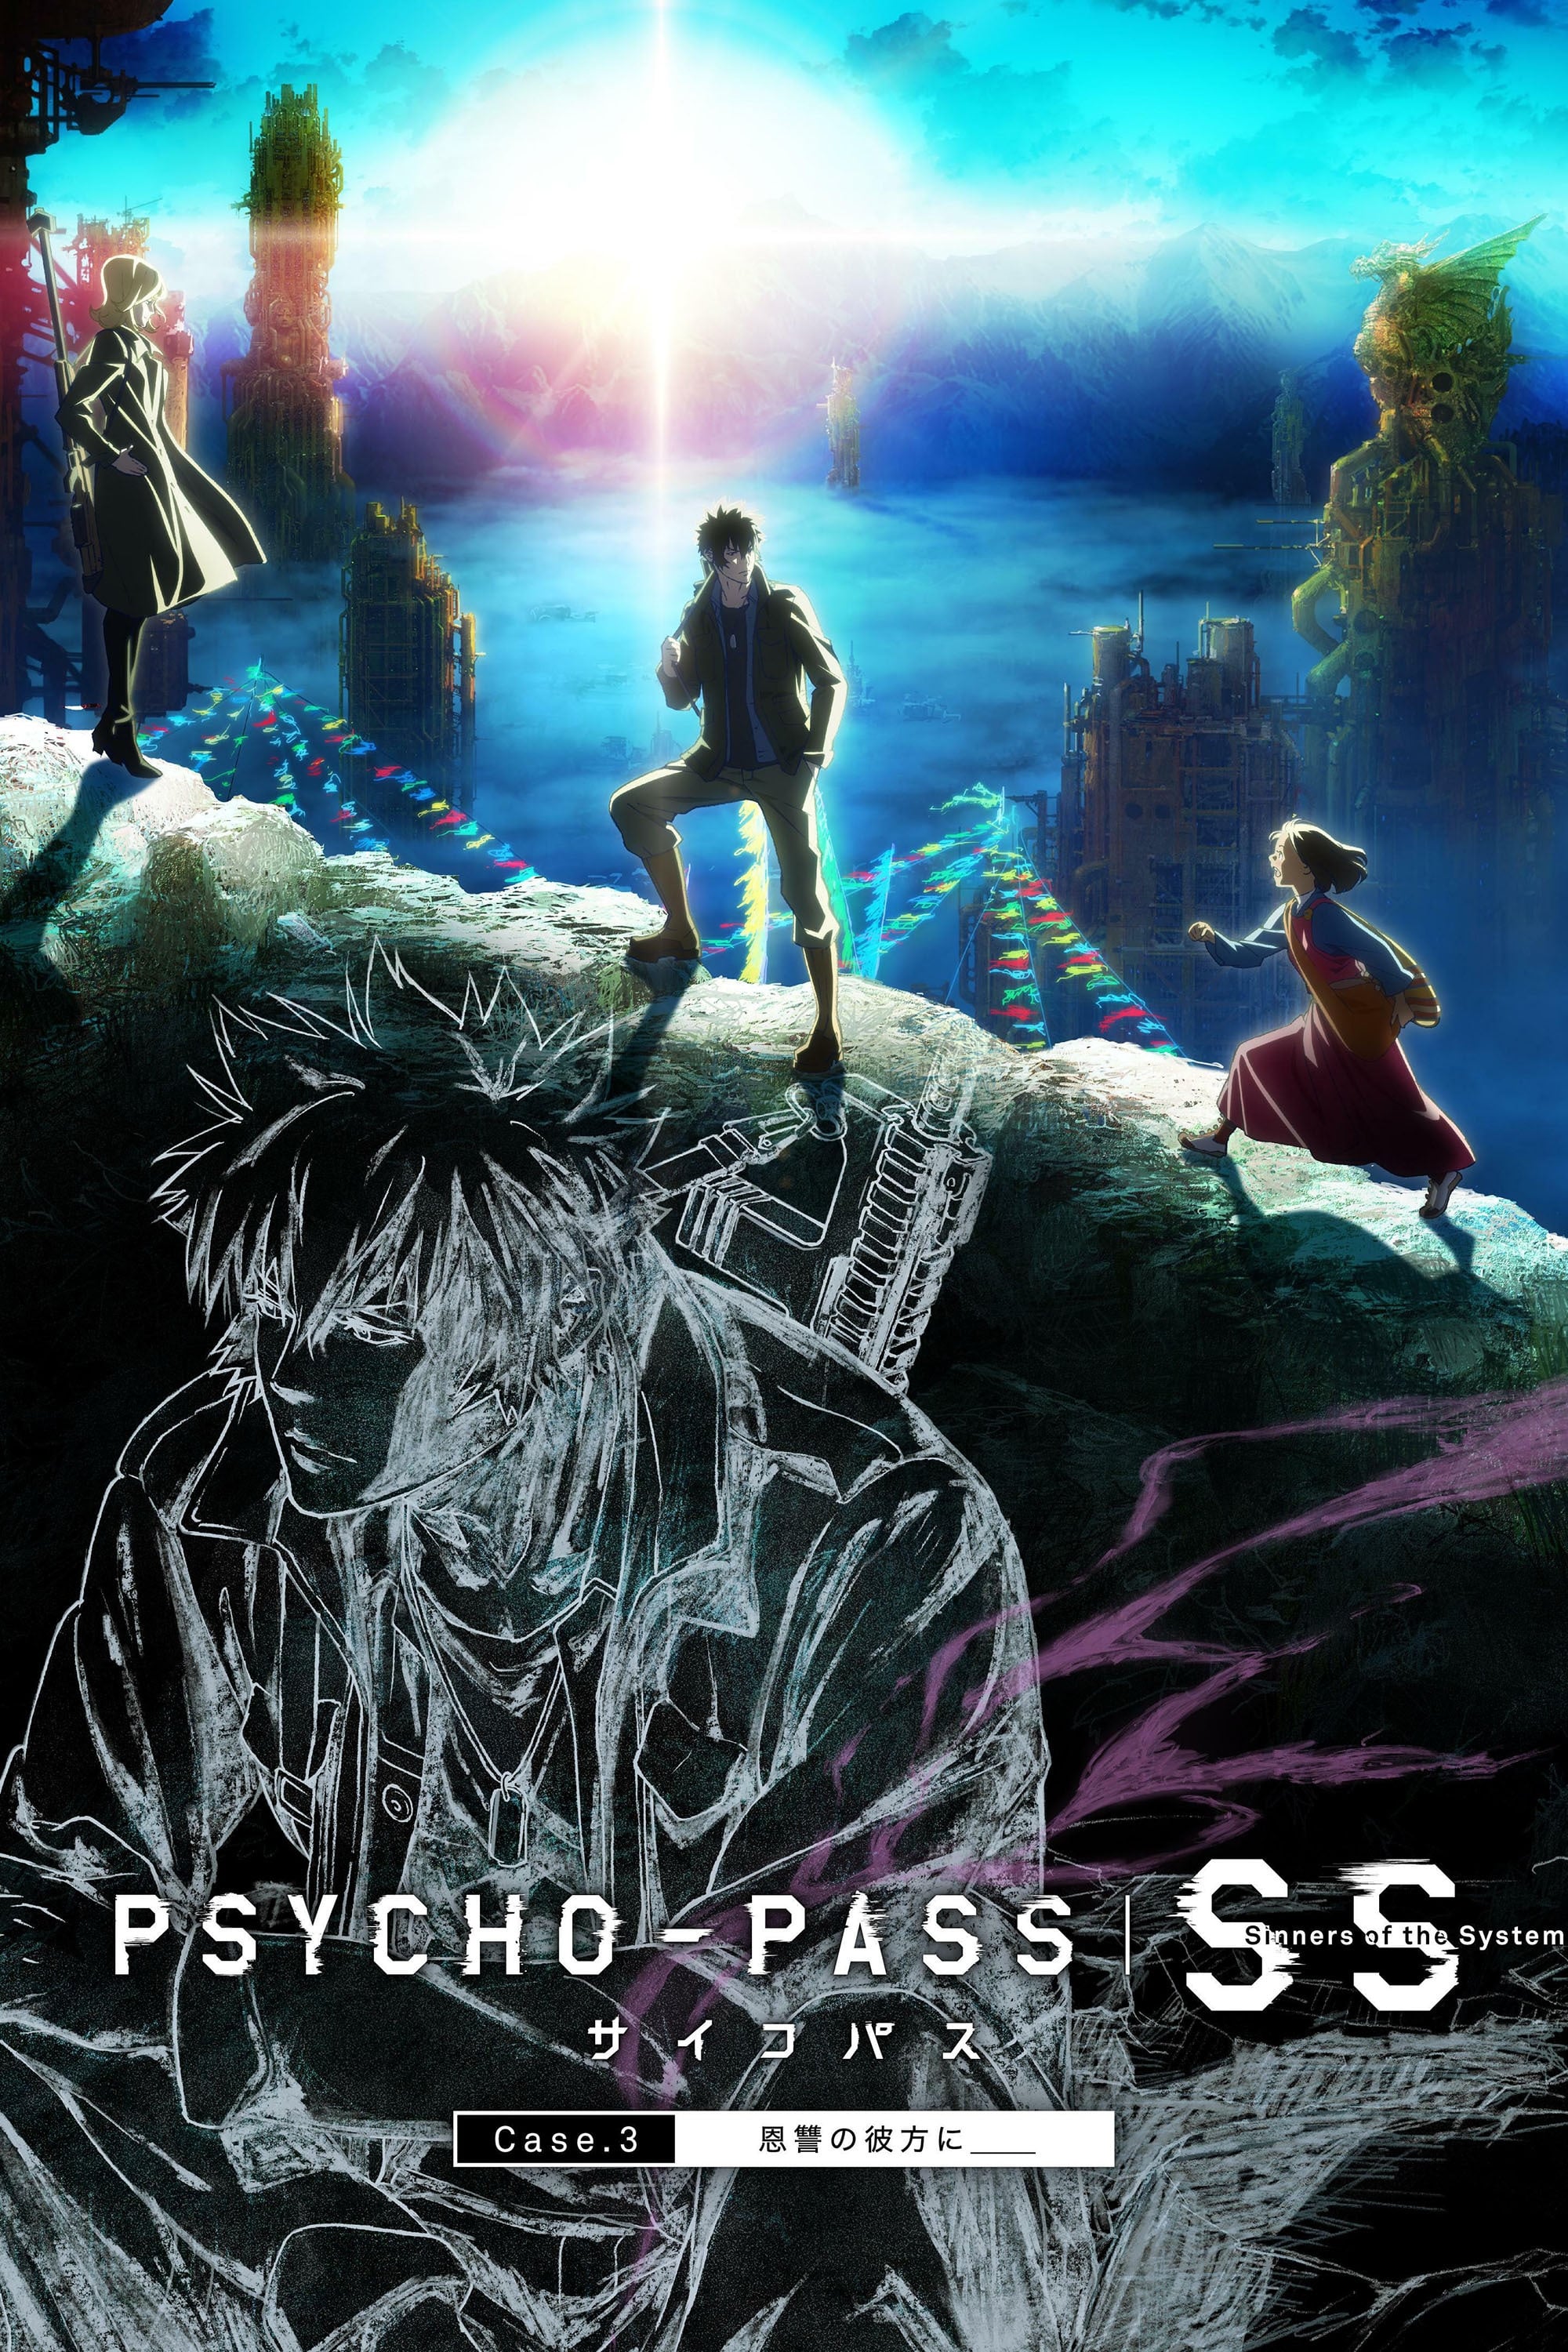 Assistir Psycho-Pass: Pecadores do Sistema Caso 3 – No Reino Além é ____